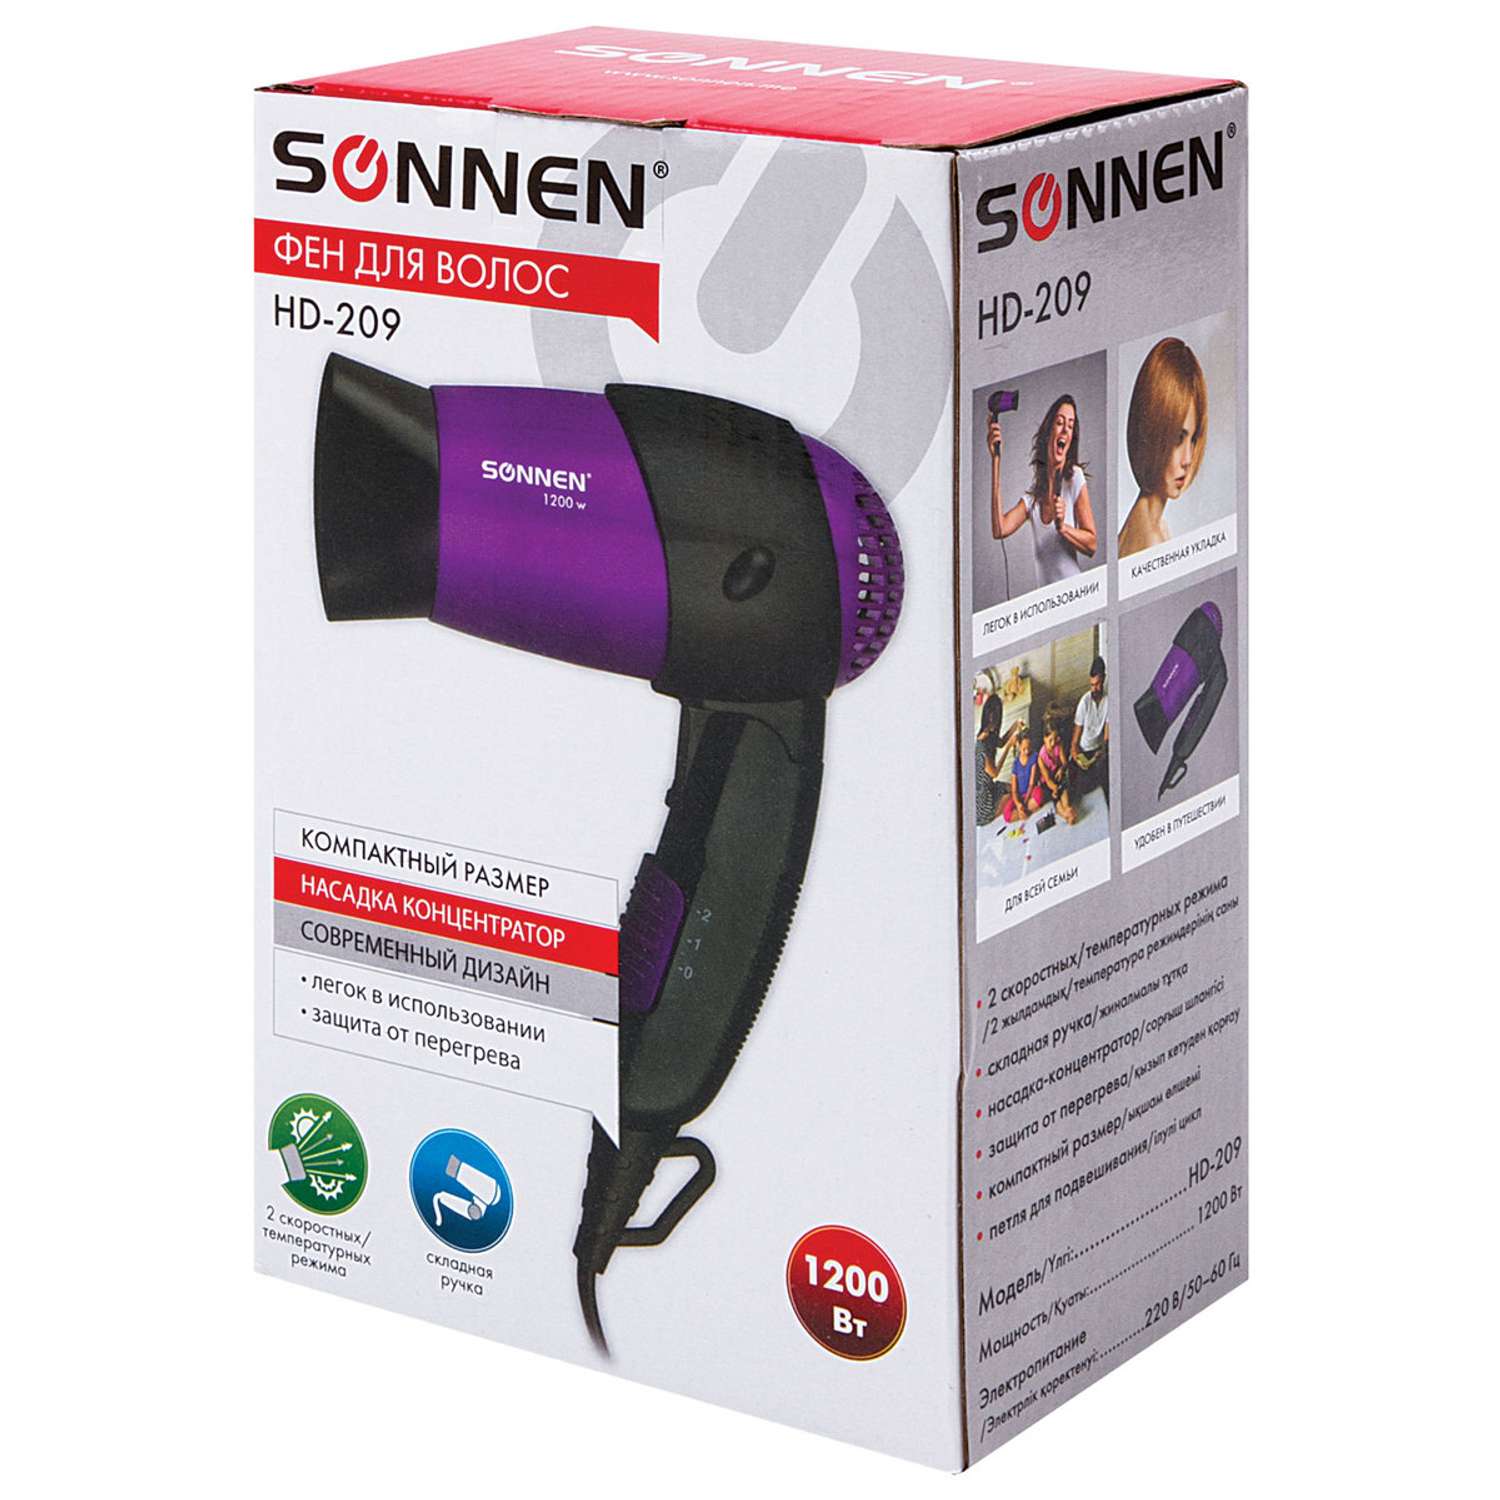 Фен Sonnen HD-209 1200Вт черный/фиолетовый - фото 10